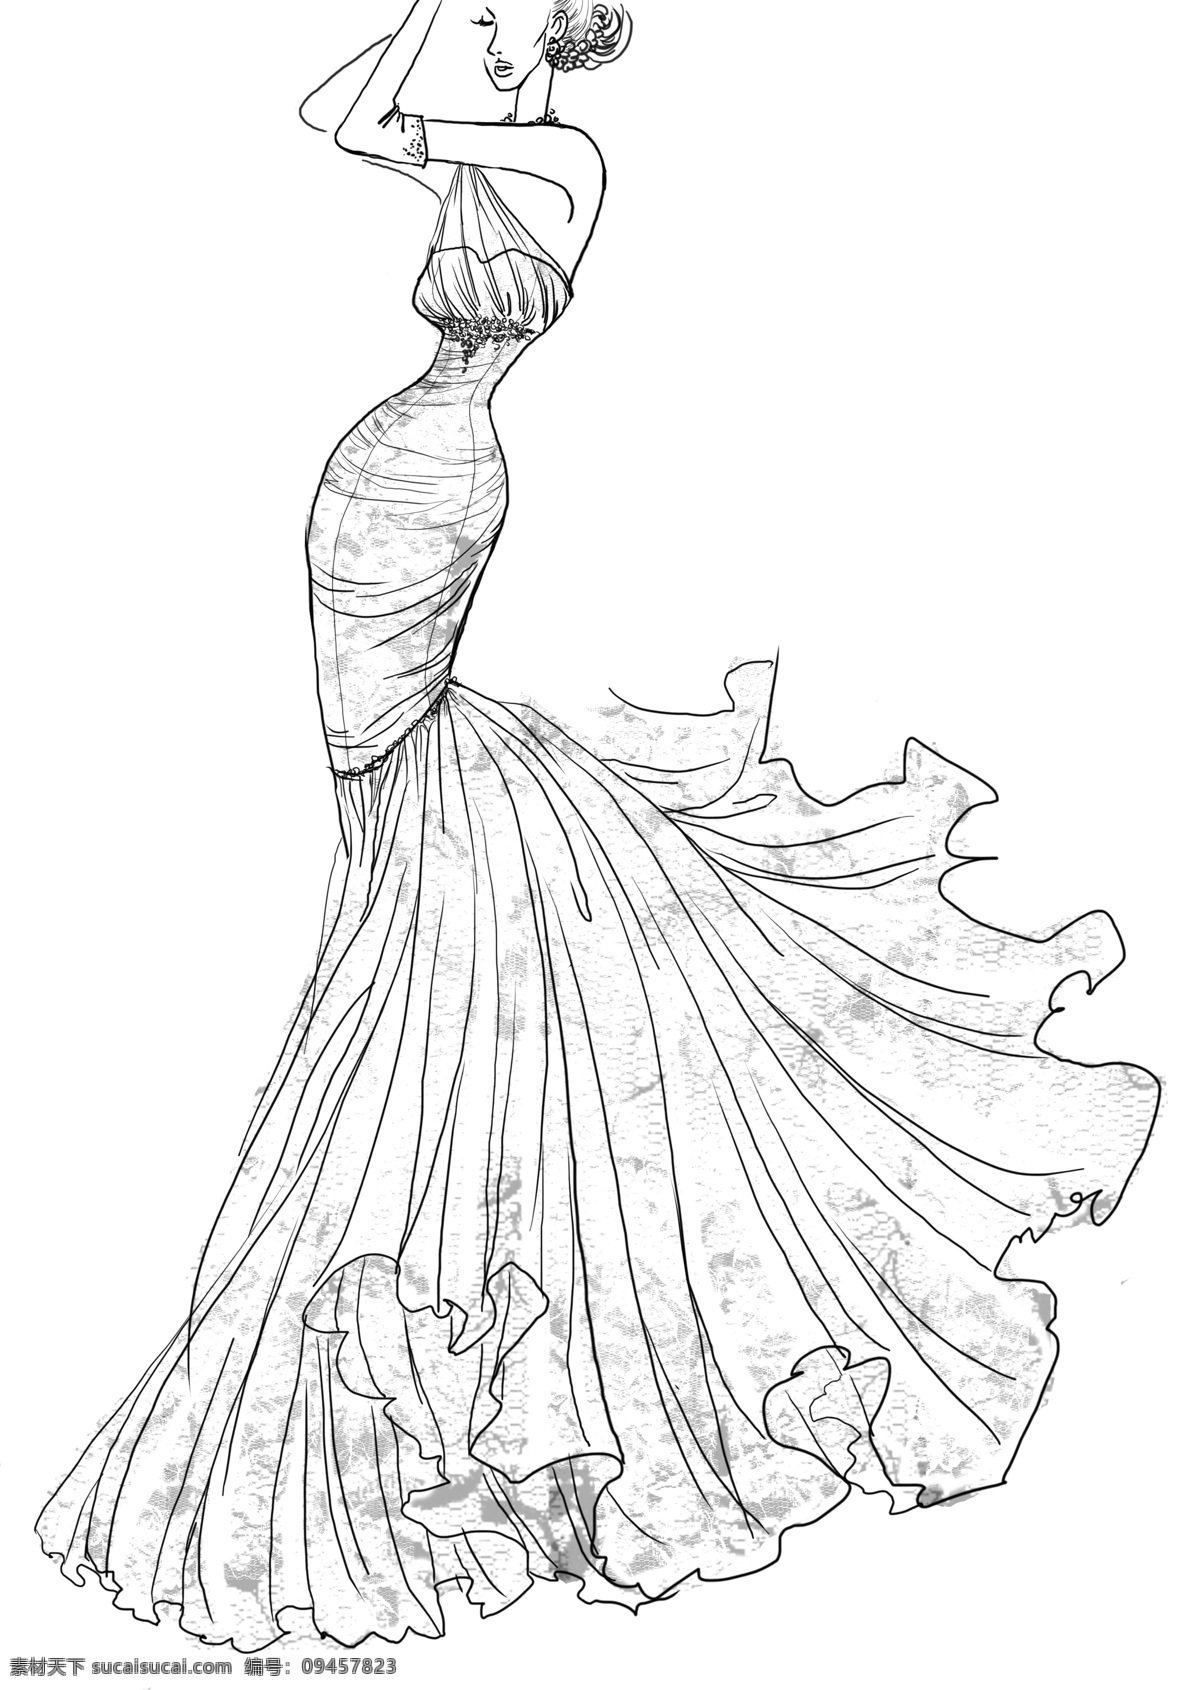 女人跳舞 女人 服装 素描 时尚 手绘 跳舞 长裙 绘画书法 文化艺术